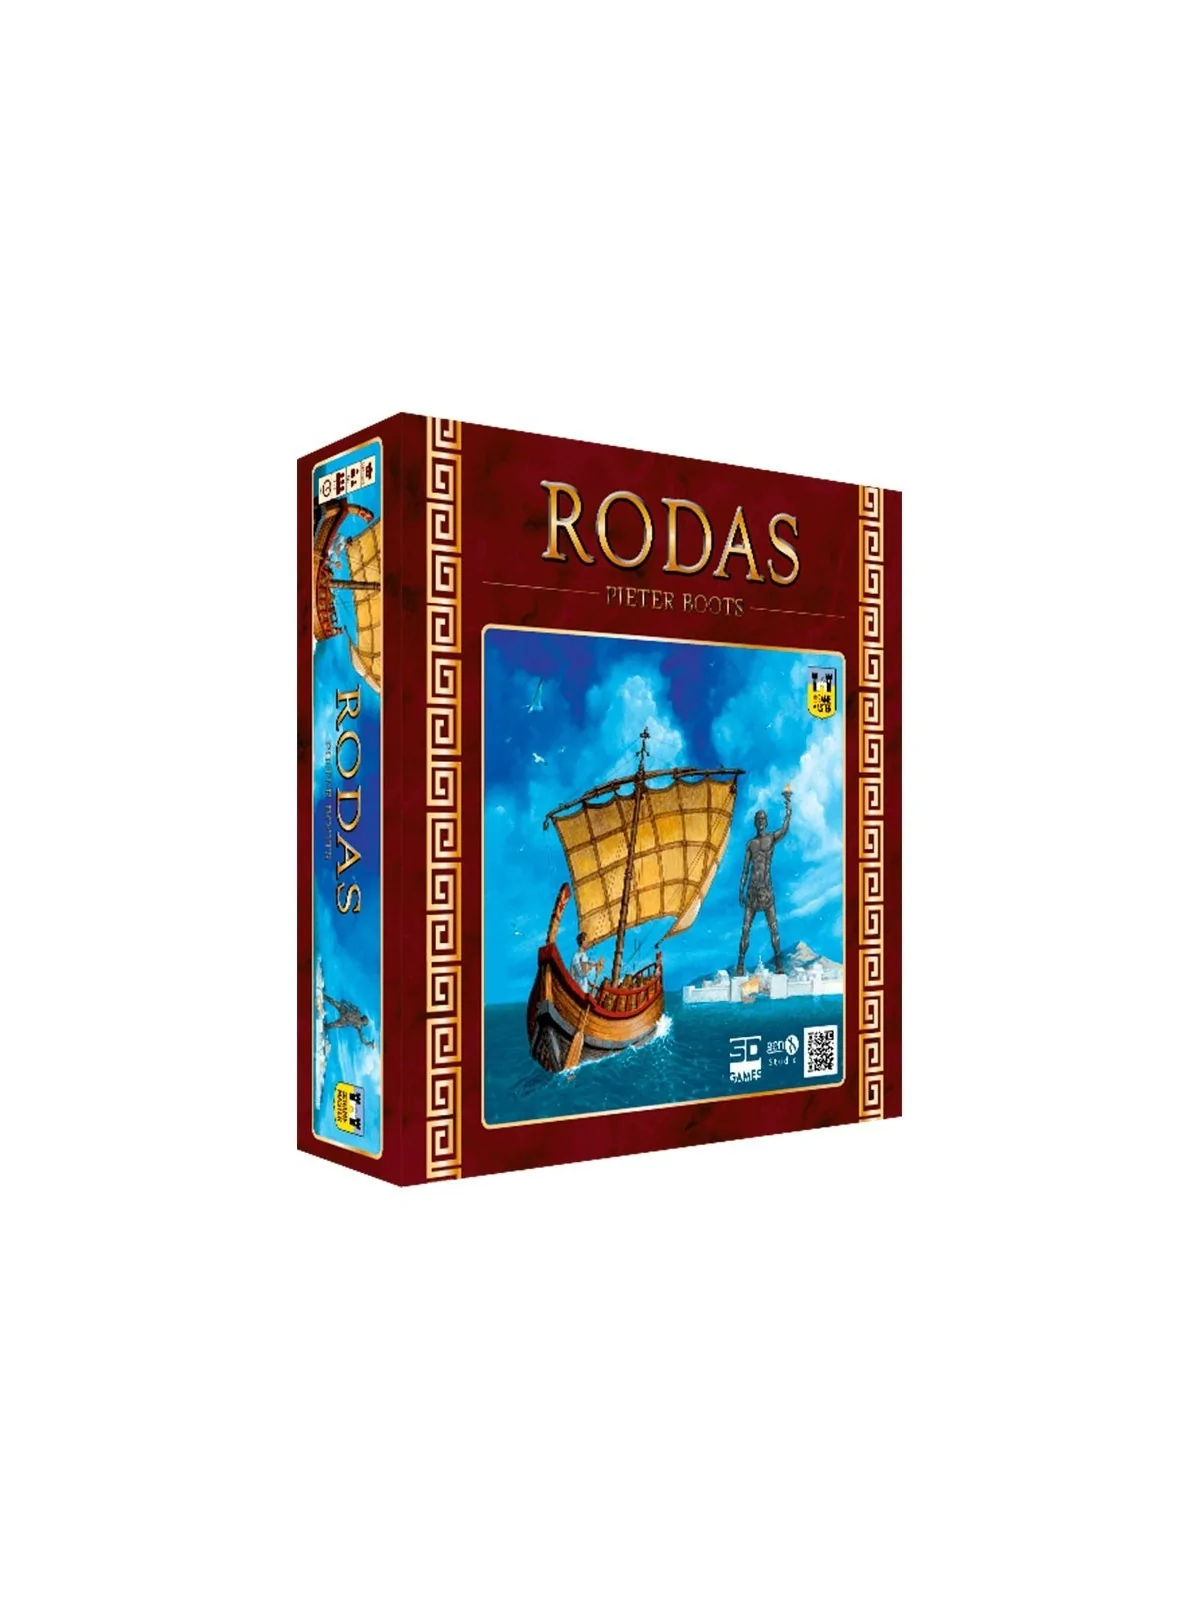 Comprar Pack Rodas barato al mejor precio 13,00 € de SD GAMES